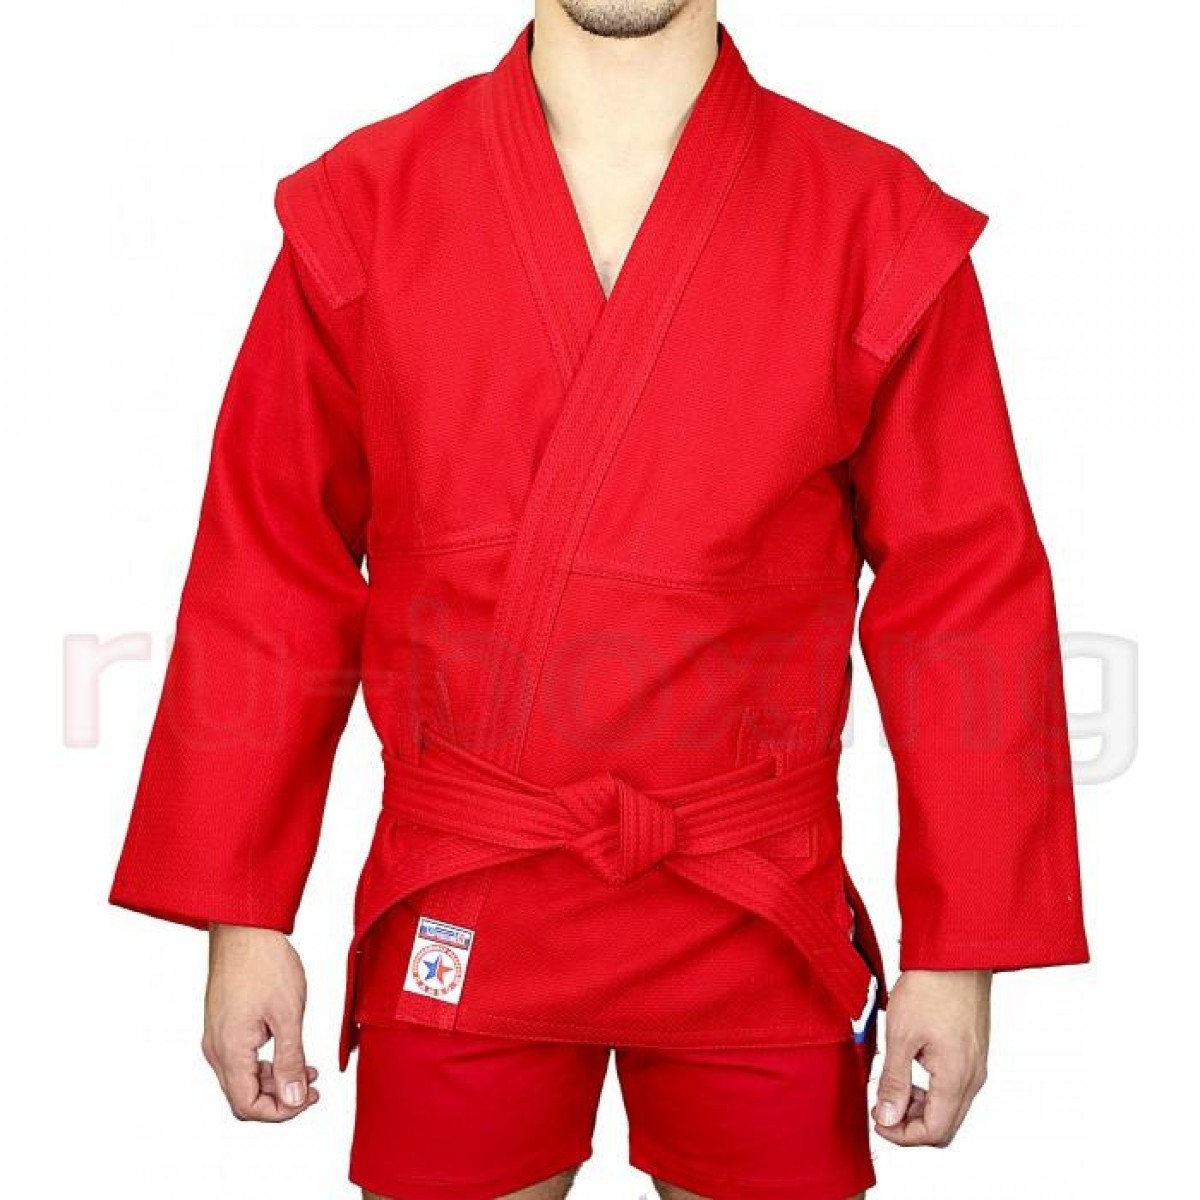 Куртка для самбо Атака размер 50 красная